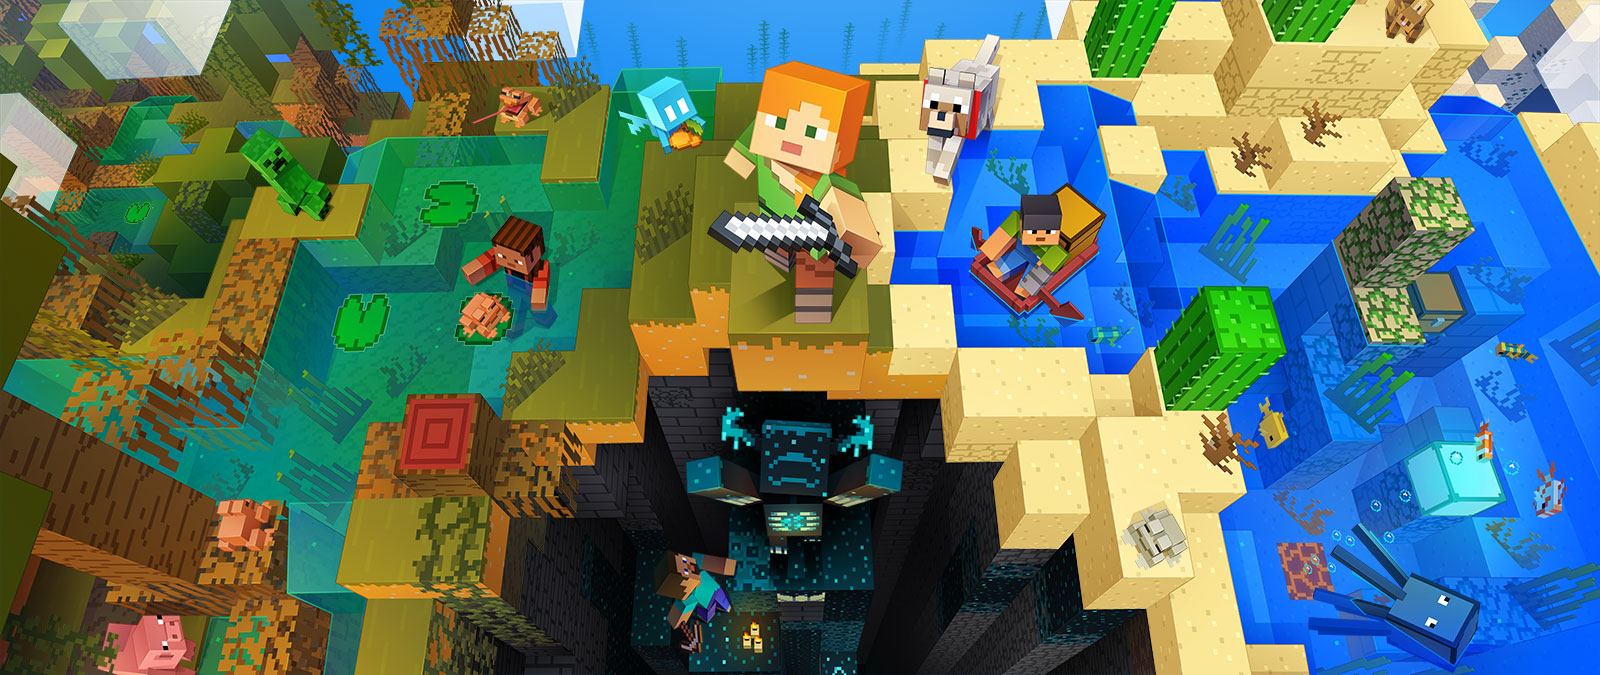 Postavy z Minecraftu provádějící různé aktivity v tomto programu